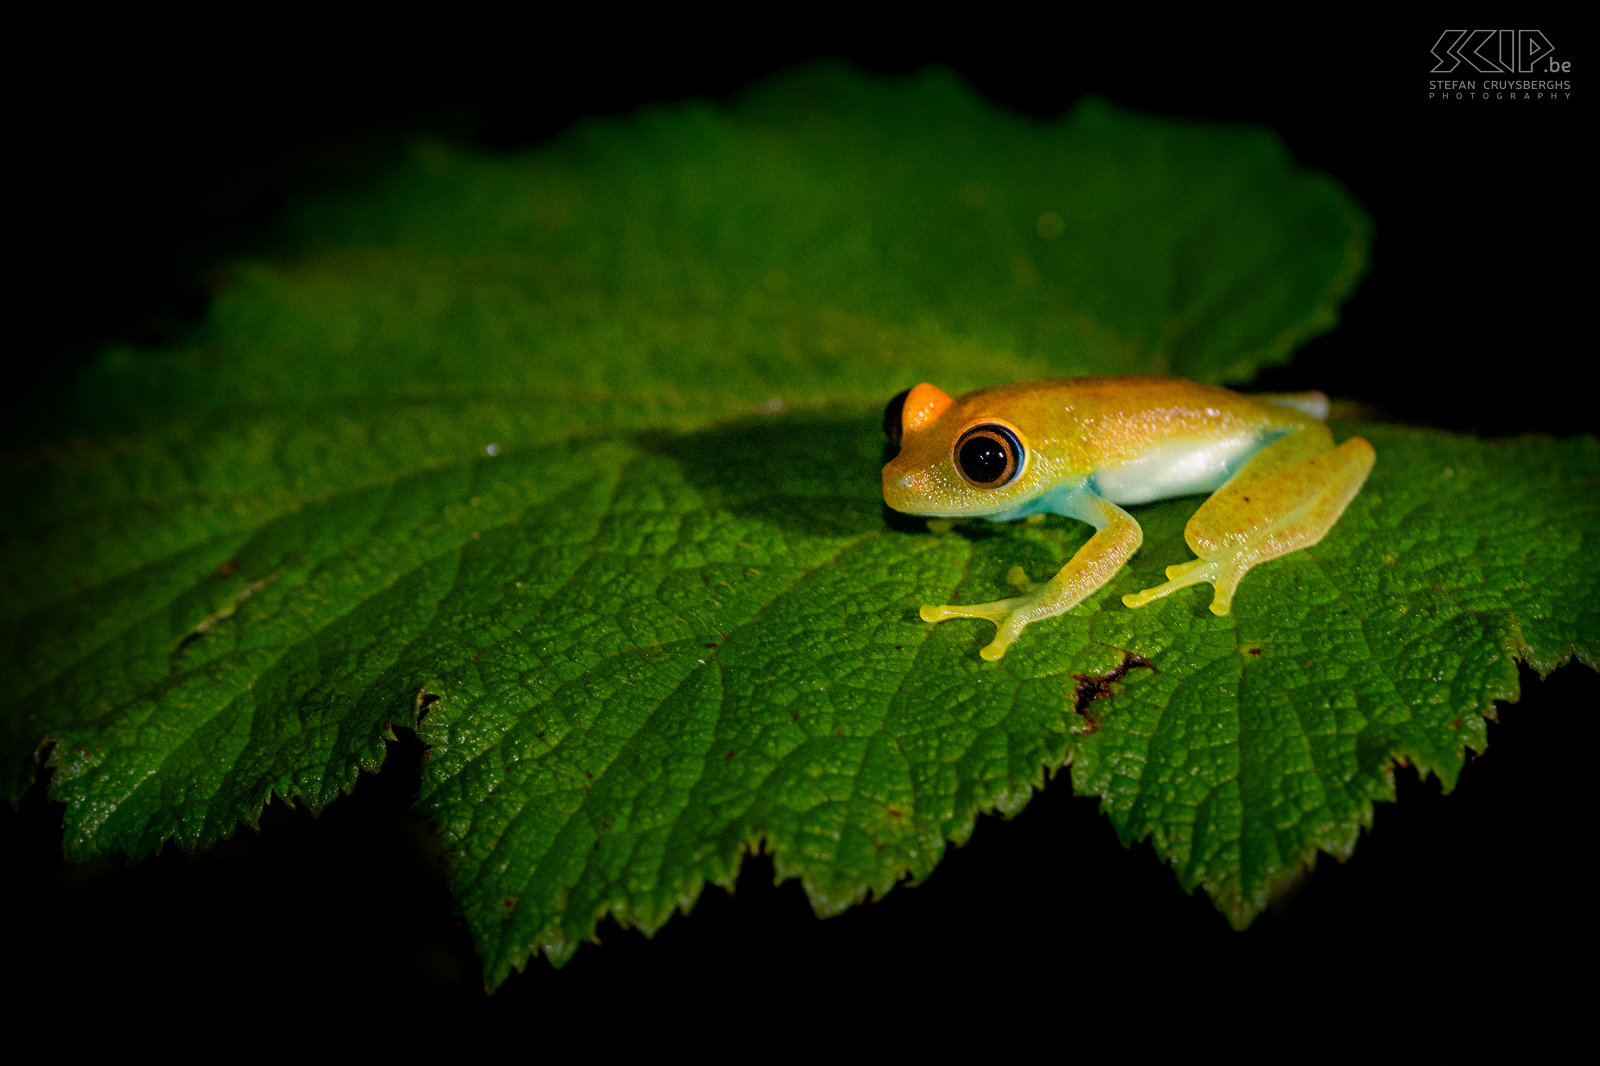 Andasibe - Green bright-eyed frog De Boophis Viridis (Green bright-eyed frog) is een kikkertje van 2 tot 3,5 cm lang, endemisch in Madagaskar en het kan z’n kleur veranderen van groen naar roodbruin. Stefan Cruysberghs